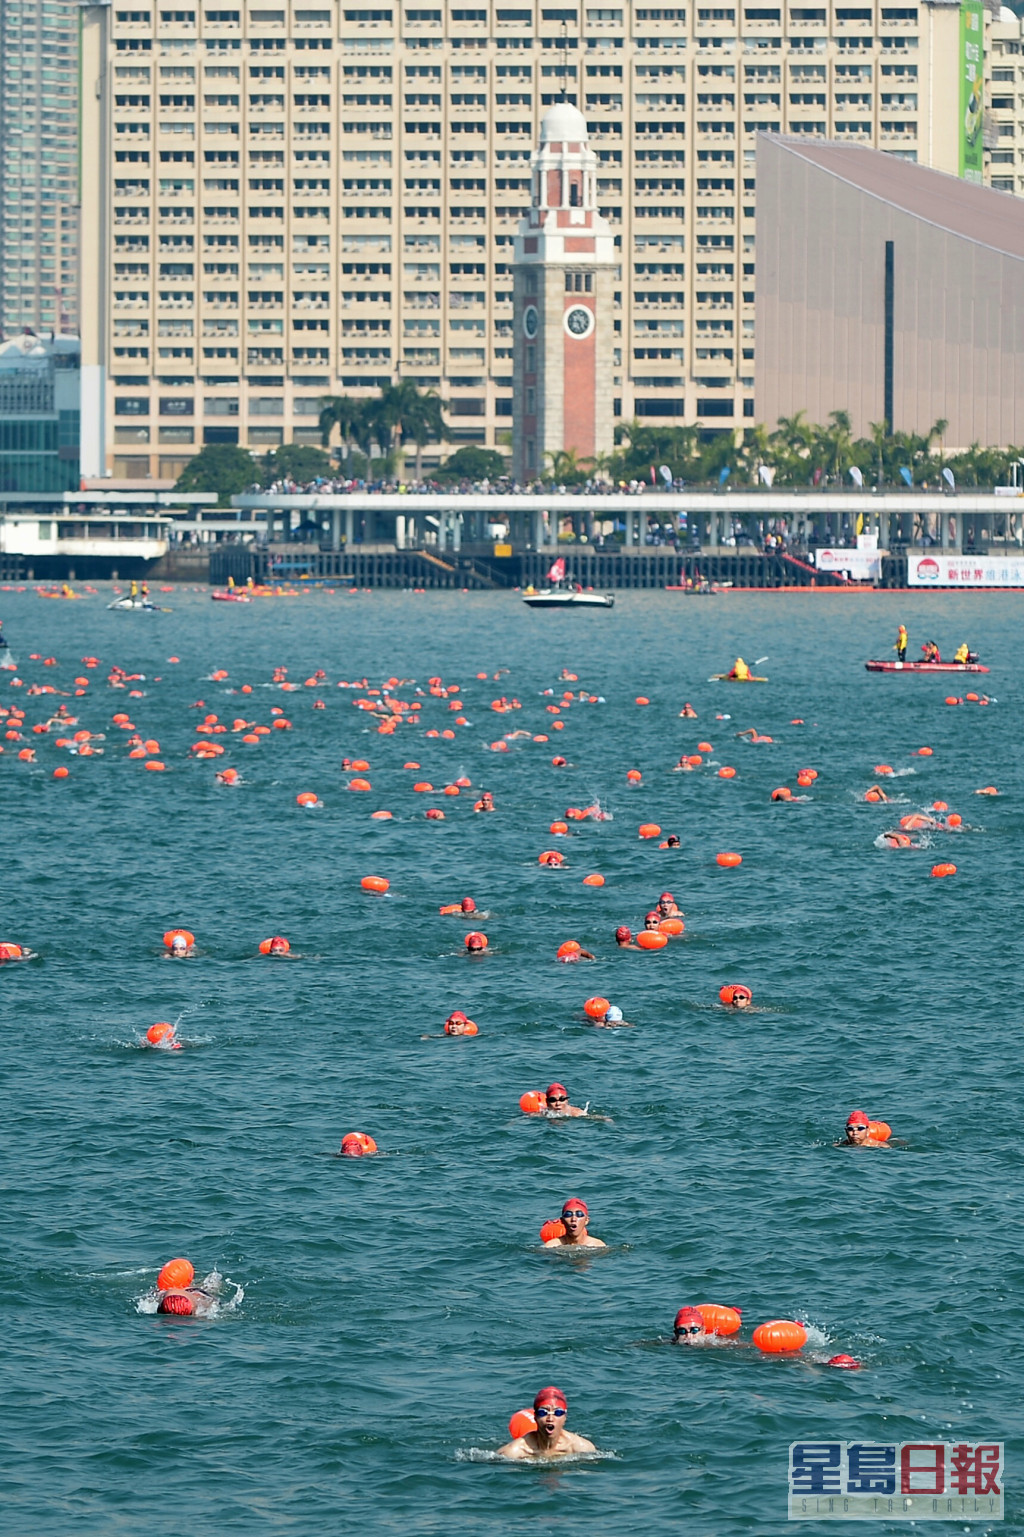 「维港渡海泳」本周日(10月23日)举行。资料图片